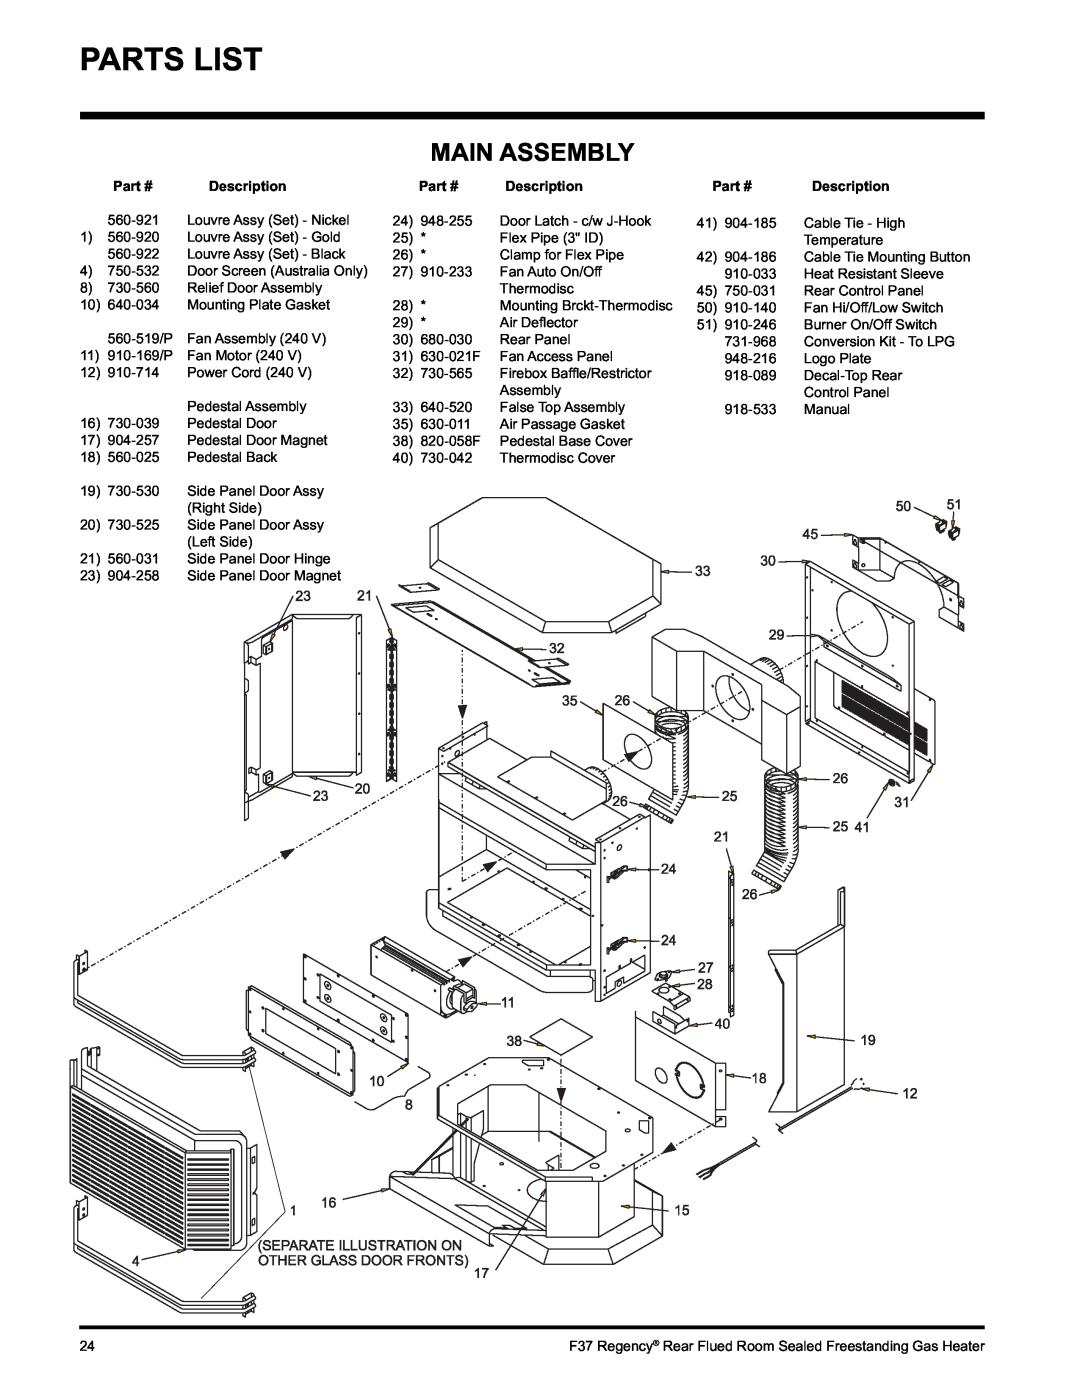 Regency F37-NG, F37-LPG installation manual Parts List, Main Assembly 